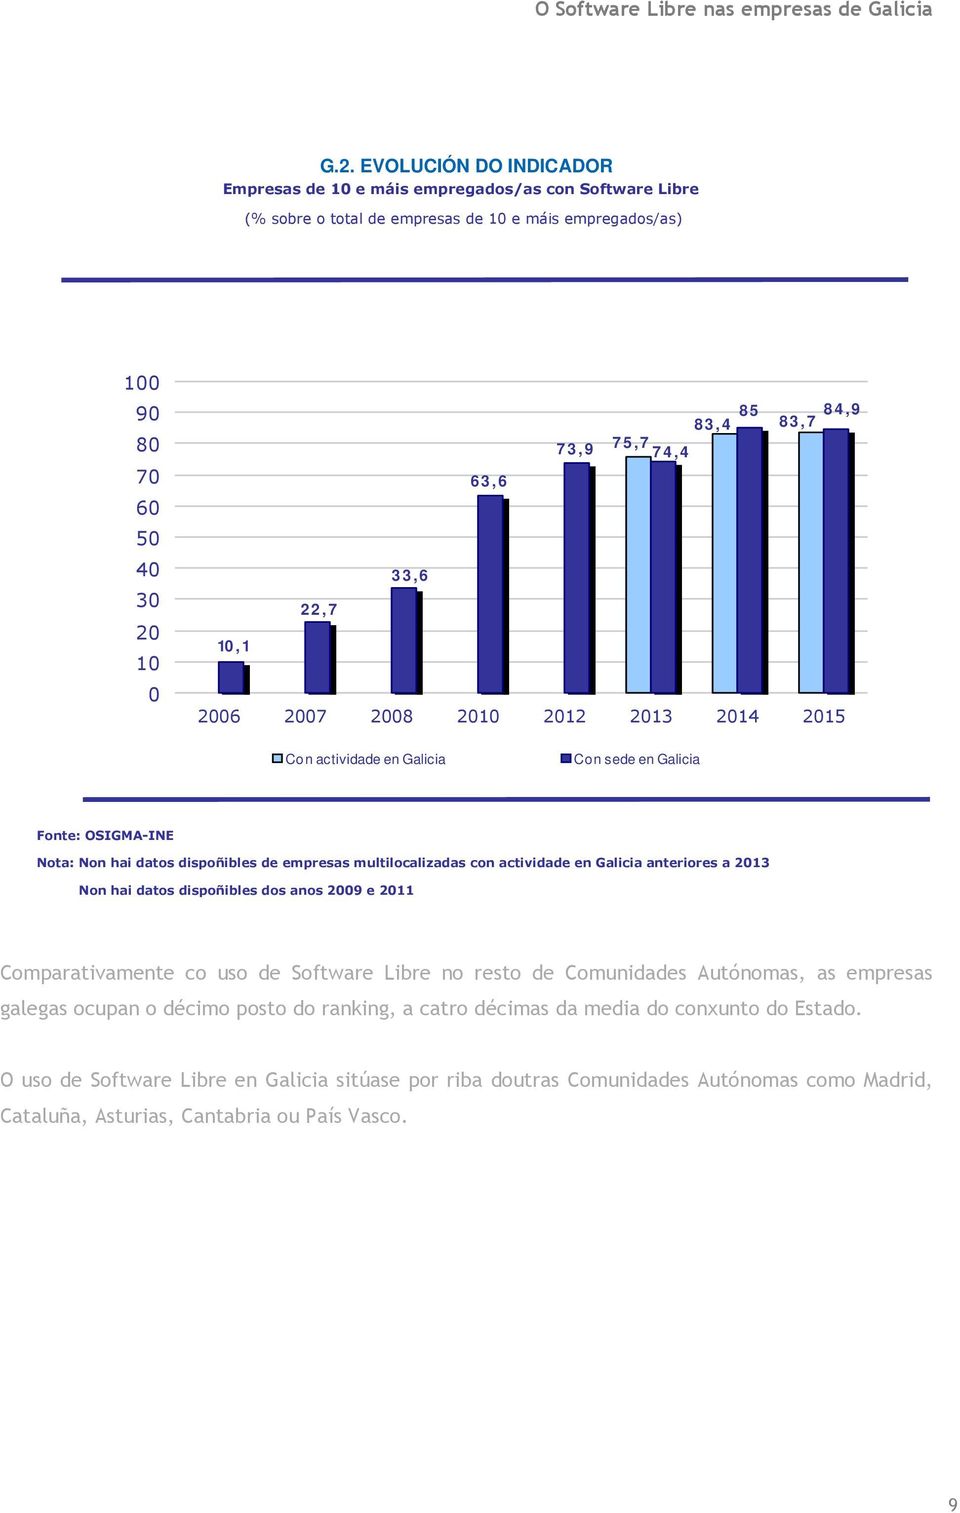 anteriores a 13 Non hai datos dispoñibles dos anos 9 e 11 Comparativamente co uso de Software Libre no resto de Comunidades Autónomas, as empresas galegas ocupan o décimo posto do